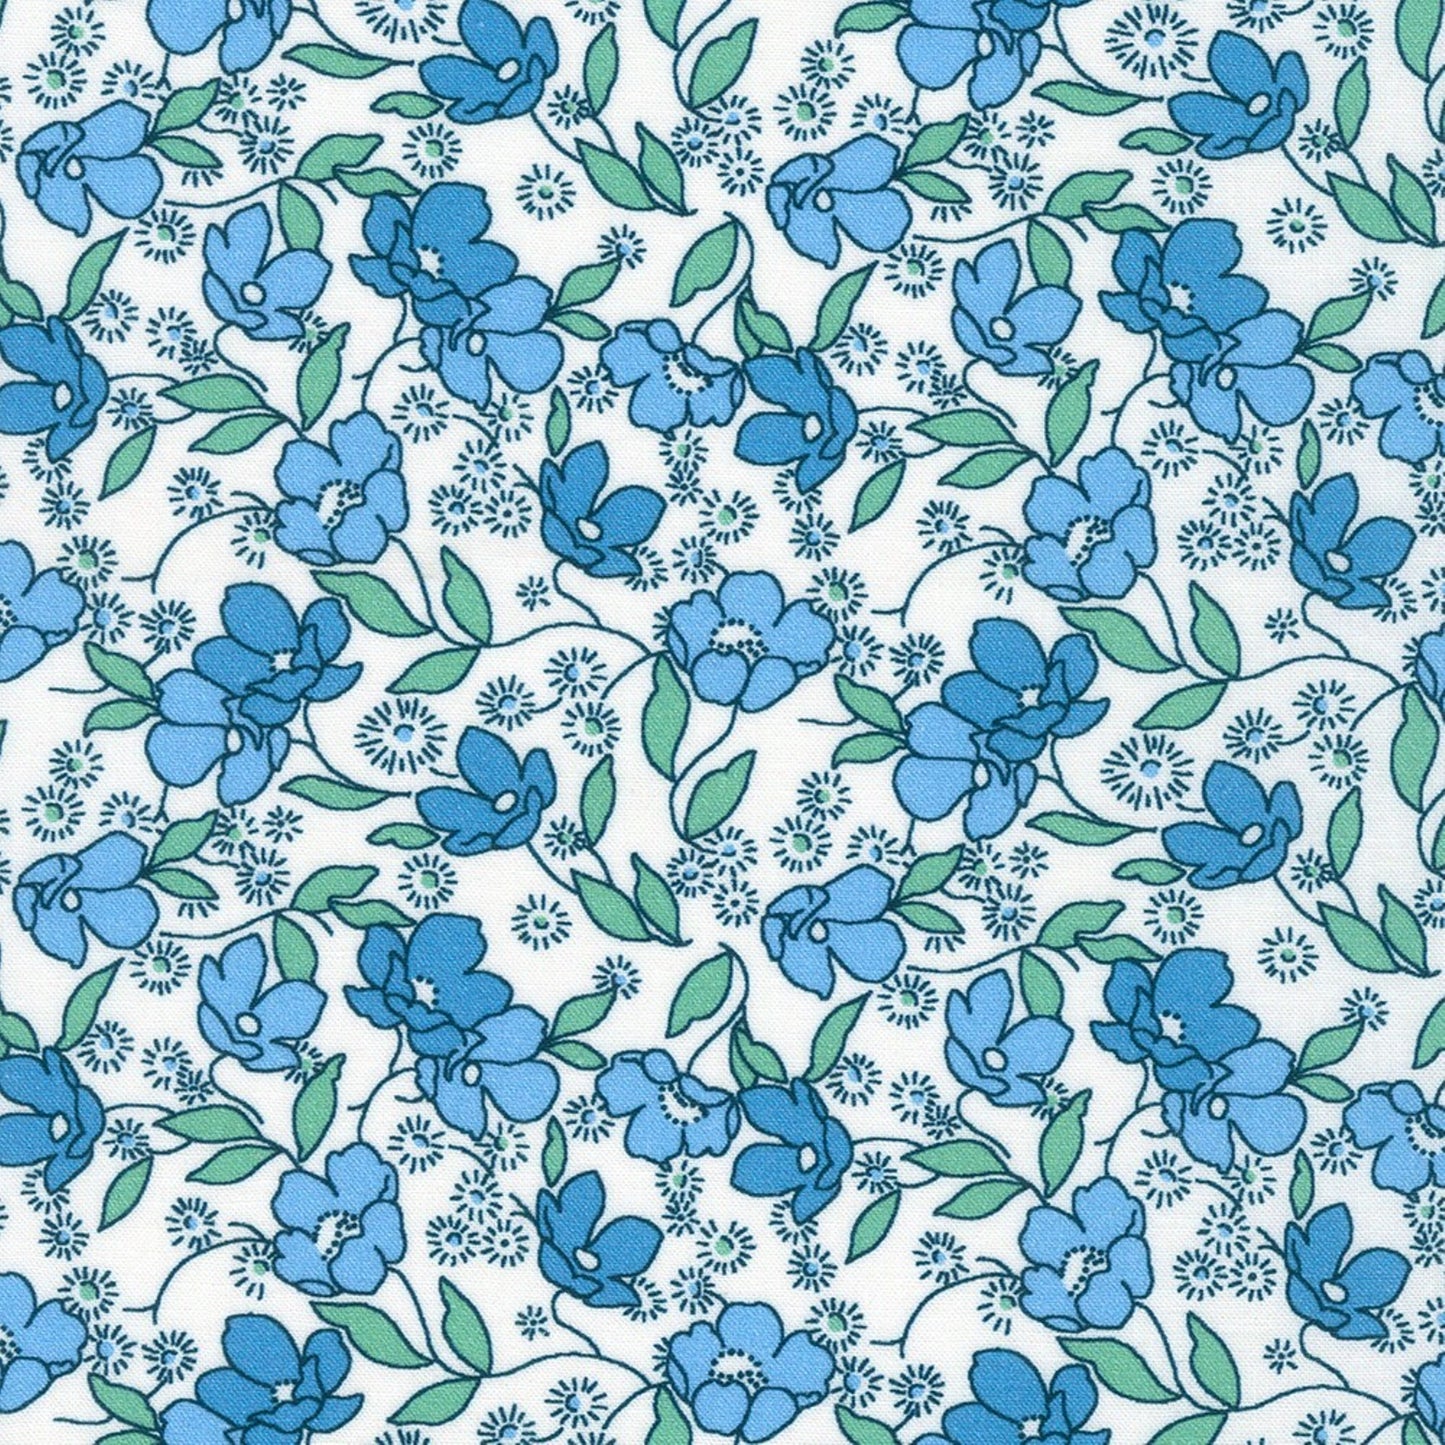 Little Blossoms Debbie Beaves 1930's reproduction bundle - 4 blue Fat Eighths Kaufman cotton quilt fabric